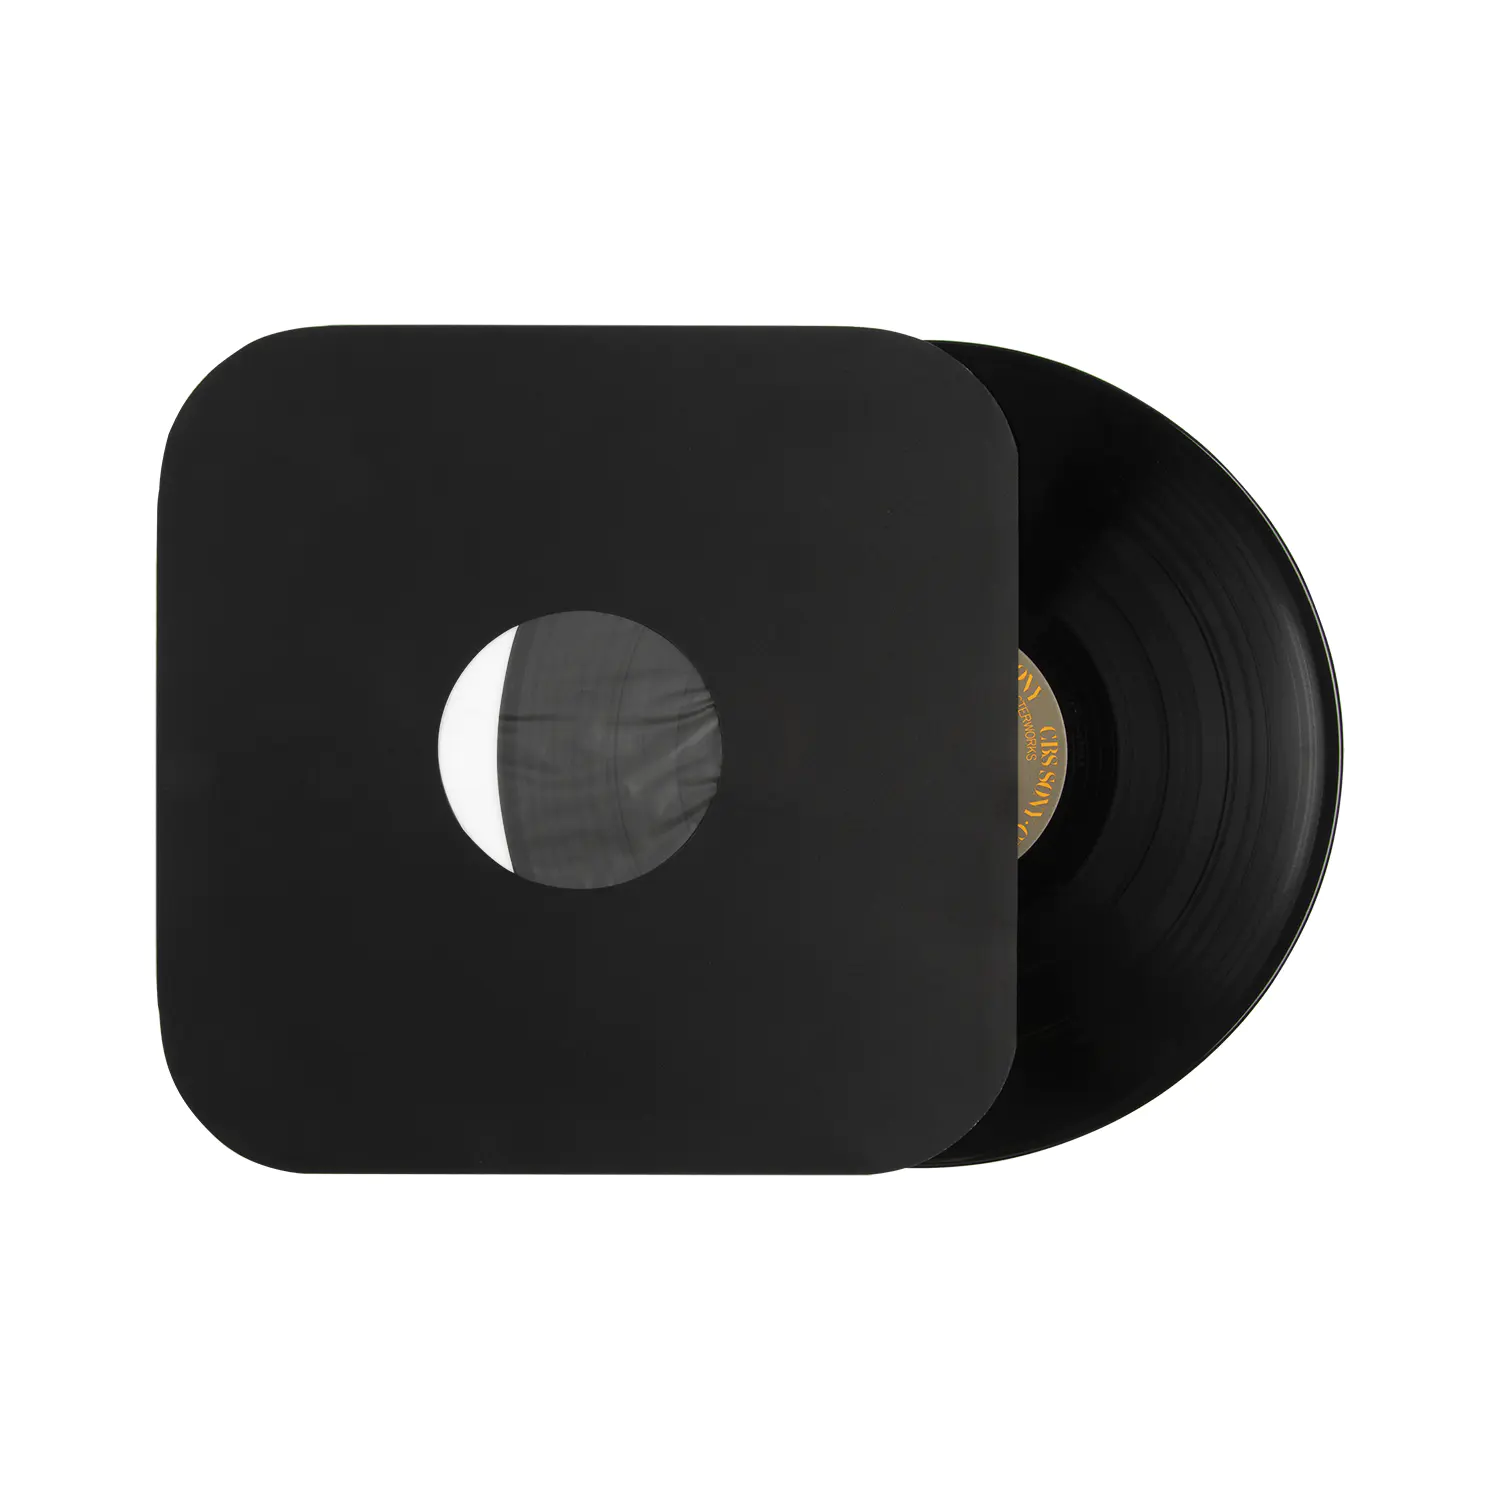 Bijeli/crni/papir u boji i polilinizirani unutarnji rukavi LP-a s okruglim kutom